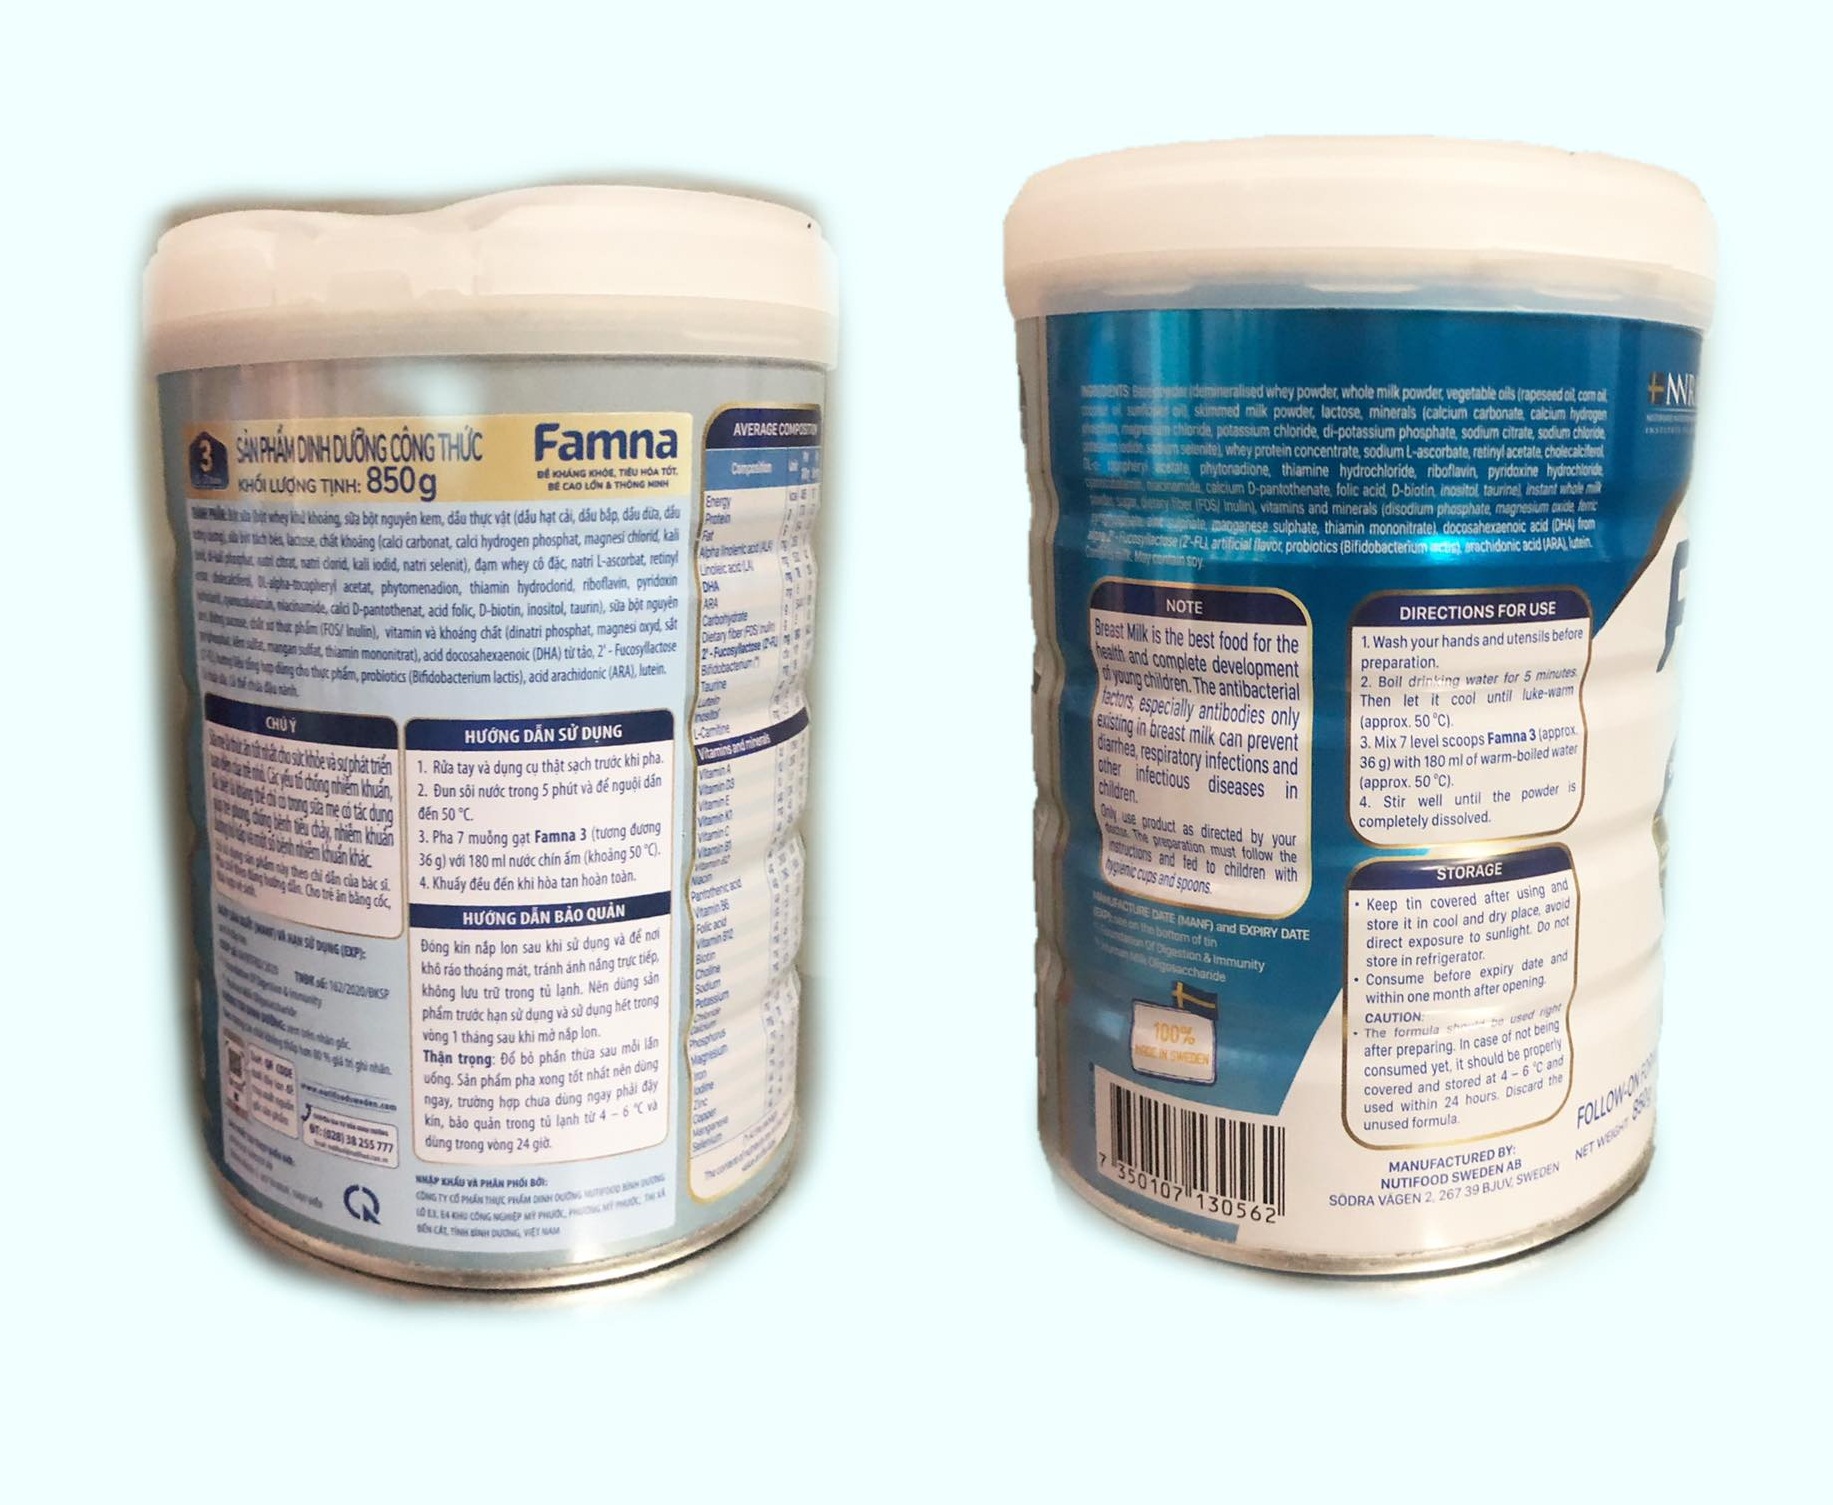 Bộ 3 lon sữa Famna step 3 850g - Đề kháng khoẻ, tiêu hoá tốt, bé cao lớn và thông minh - Hàng chính hãng của NutiFood